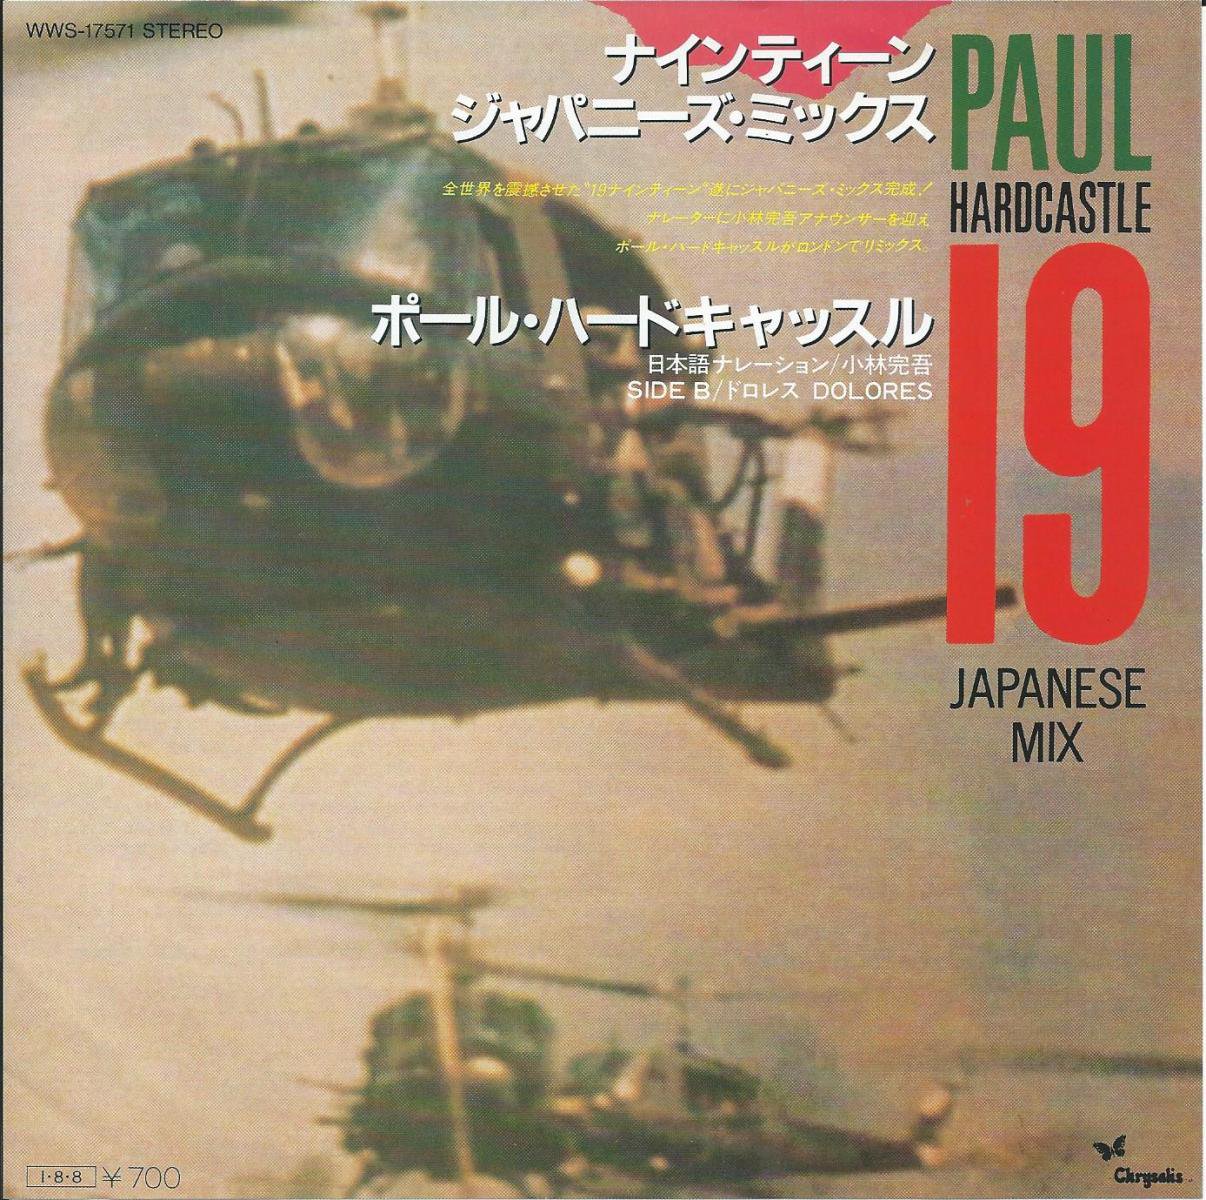 ポール・ハードキャッスル PAUL HARDCASTLE / ナインティーン ジャパニーズ・ミックス 19 JAPANESE MIX (7